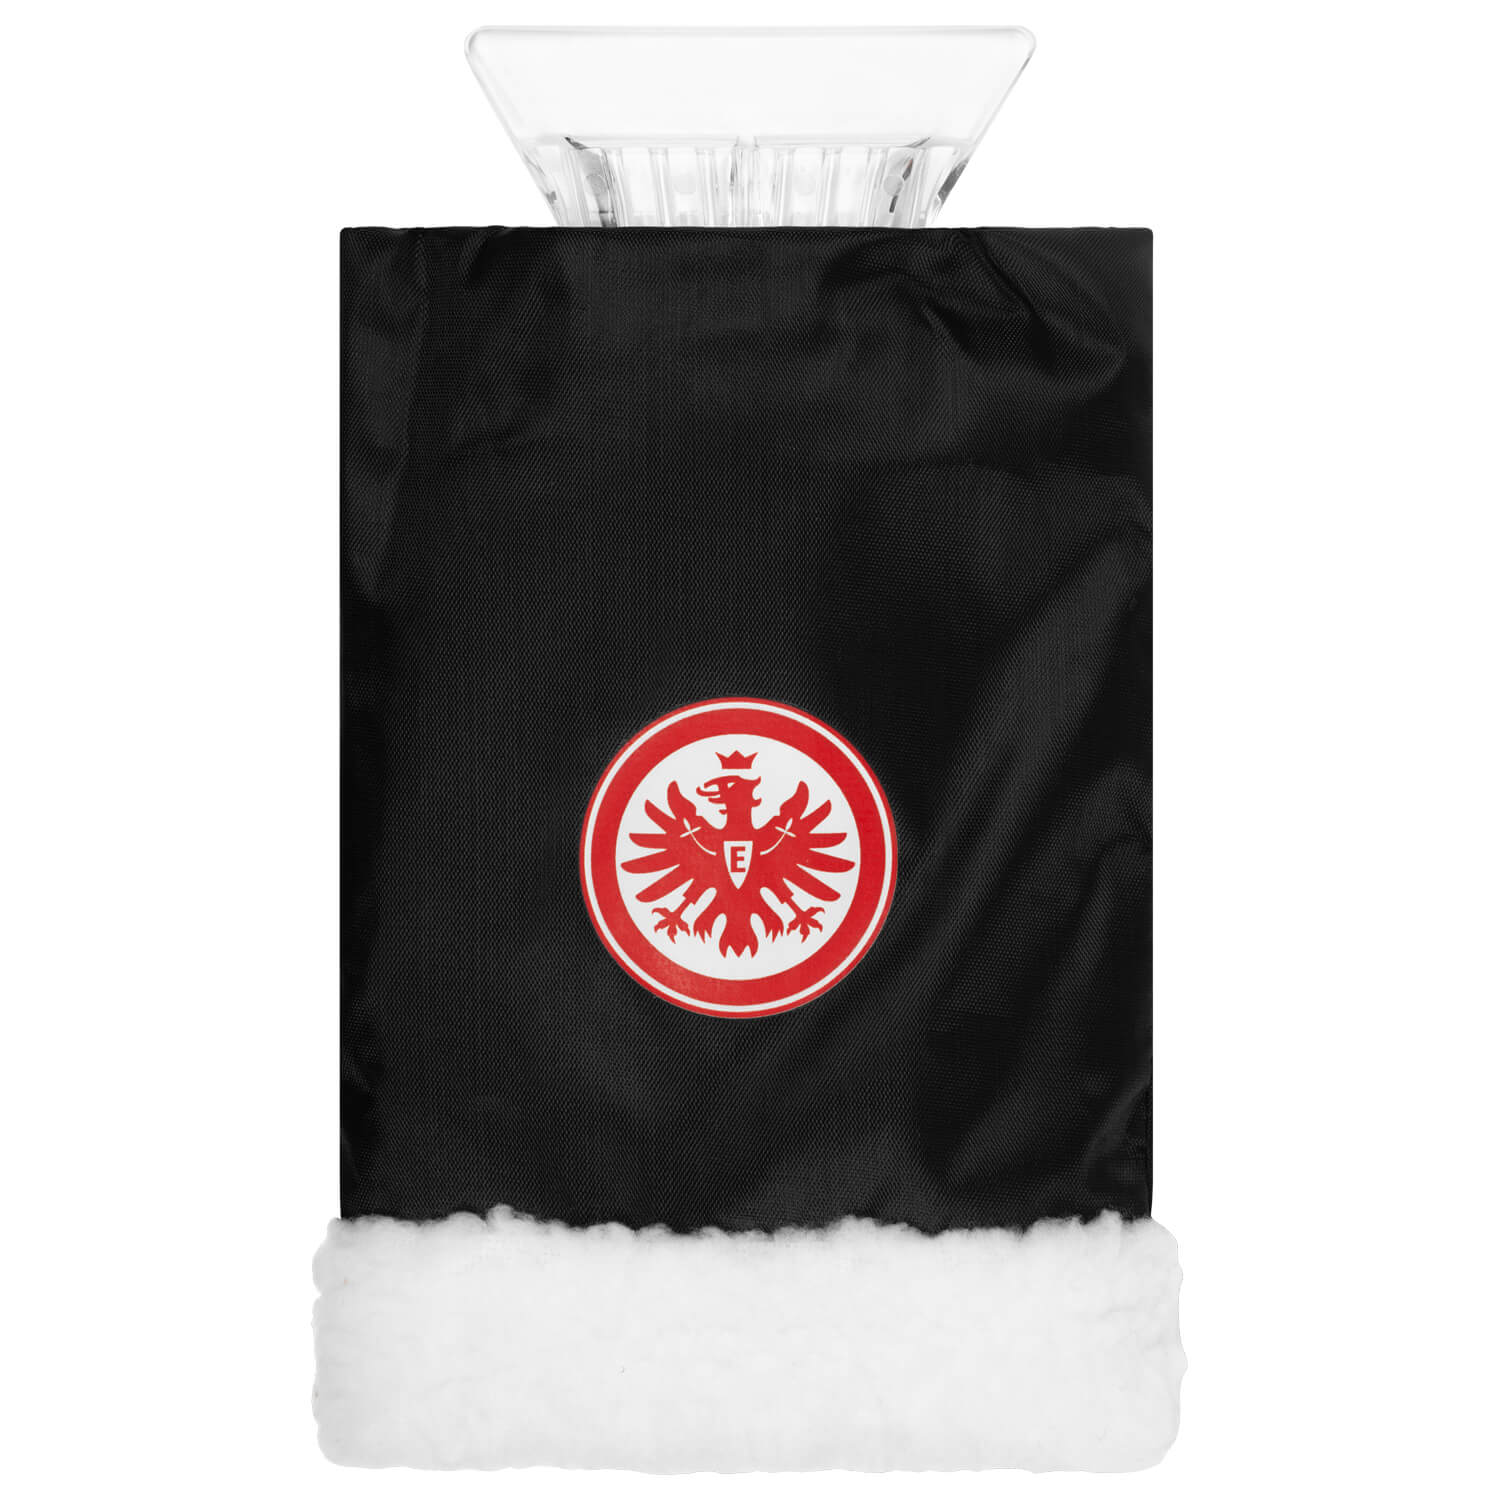 Bild 1: Eiskratzer Eintracht Frankfurt